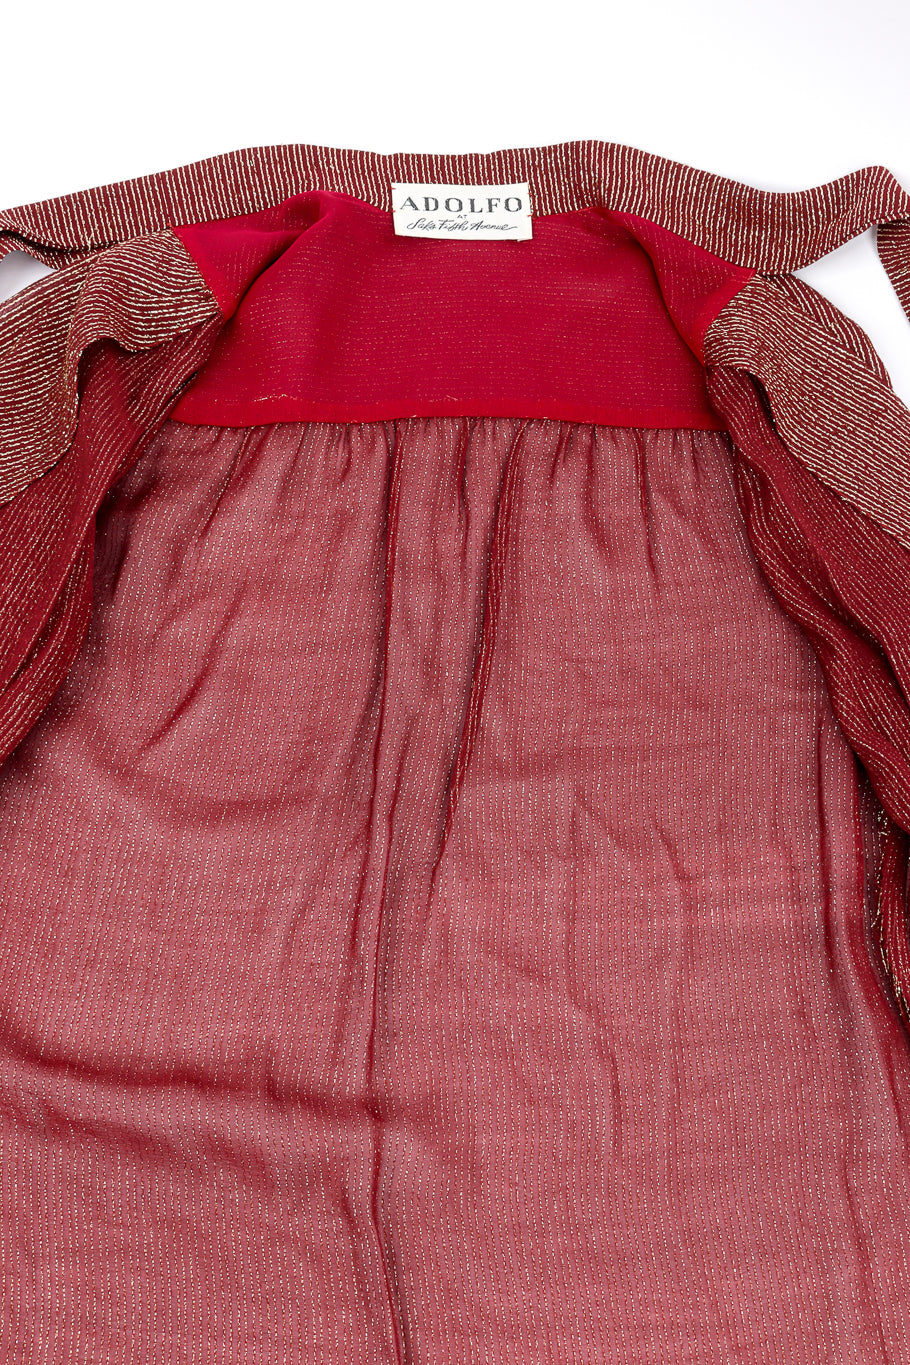 Vintage Adolfo Lamé Blouse & Pleated Skirt Set view of blouse interior @recess la